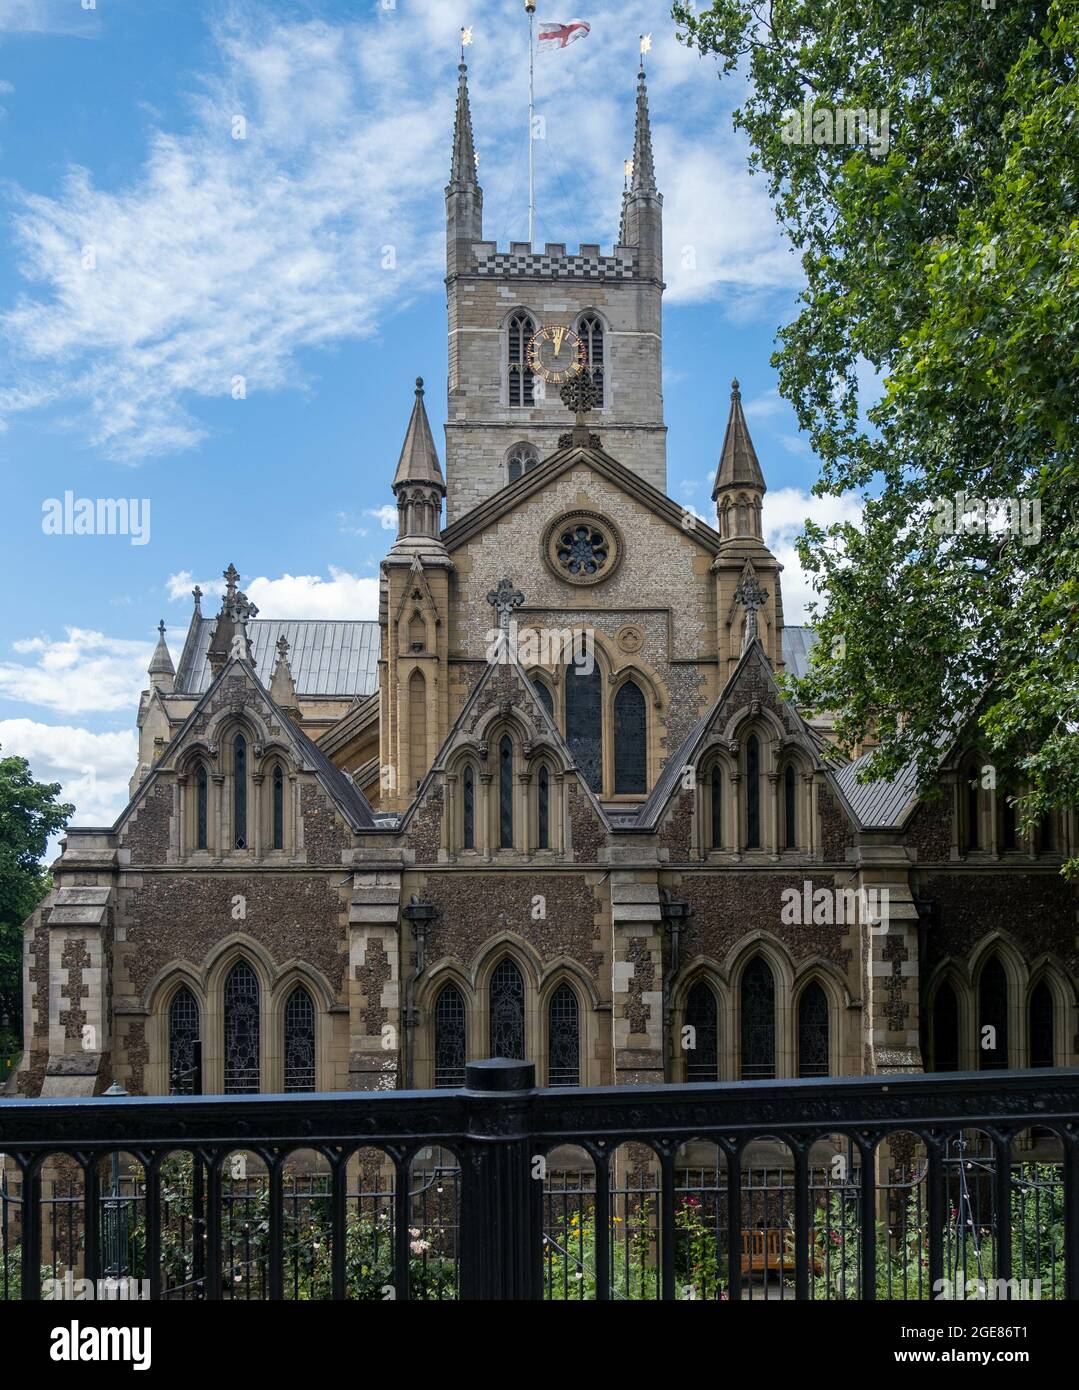 LONDON, VEREINIGTES KÖNIGREICH - 29. Jul 2021: Eine vertikale Aufnahme der Southwark Cathedral in London, England, Vereinigtes Königreich Stockfoto